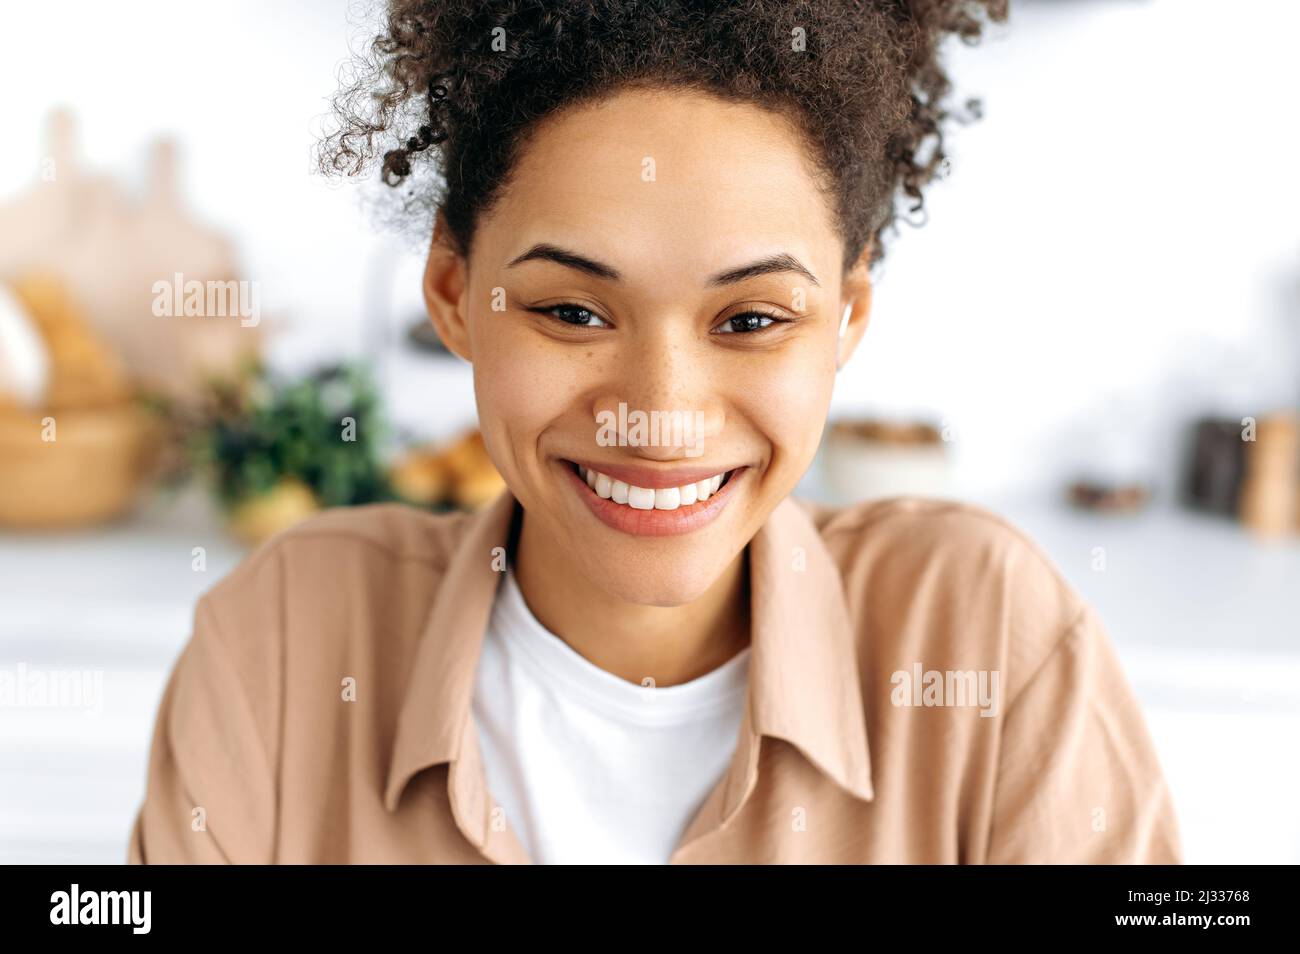 Retrato en primer plano de una encantadora y alegre niña milenaria afroamericana con pelo rizado y pecas, con una sonrisa blanca como la nieve, con una camisa informal, mirando la cámara y sonriendo felizmente Foto de stock